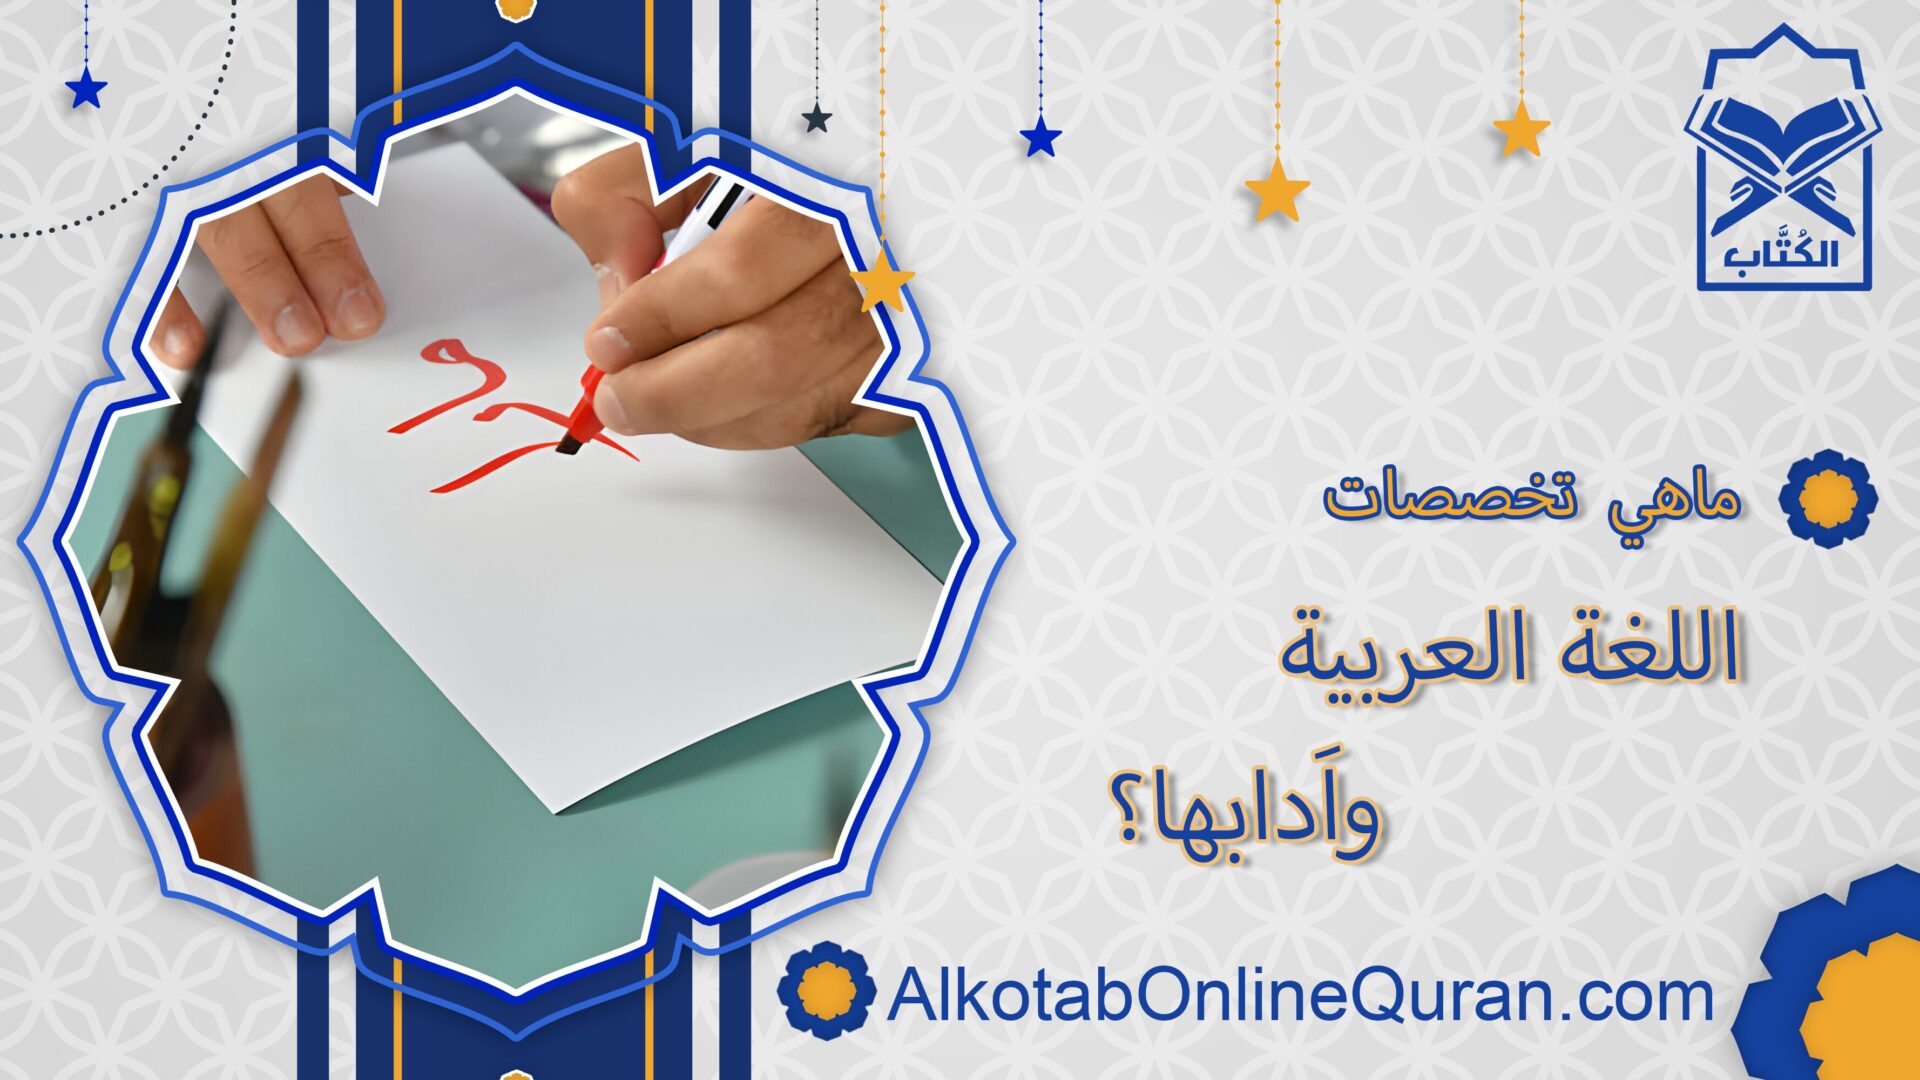 ماهي تخصصات اللغة العربية واَدابها؟